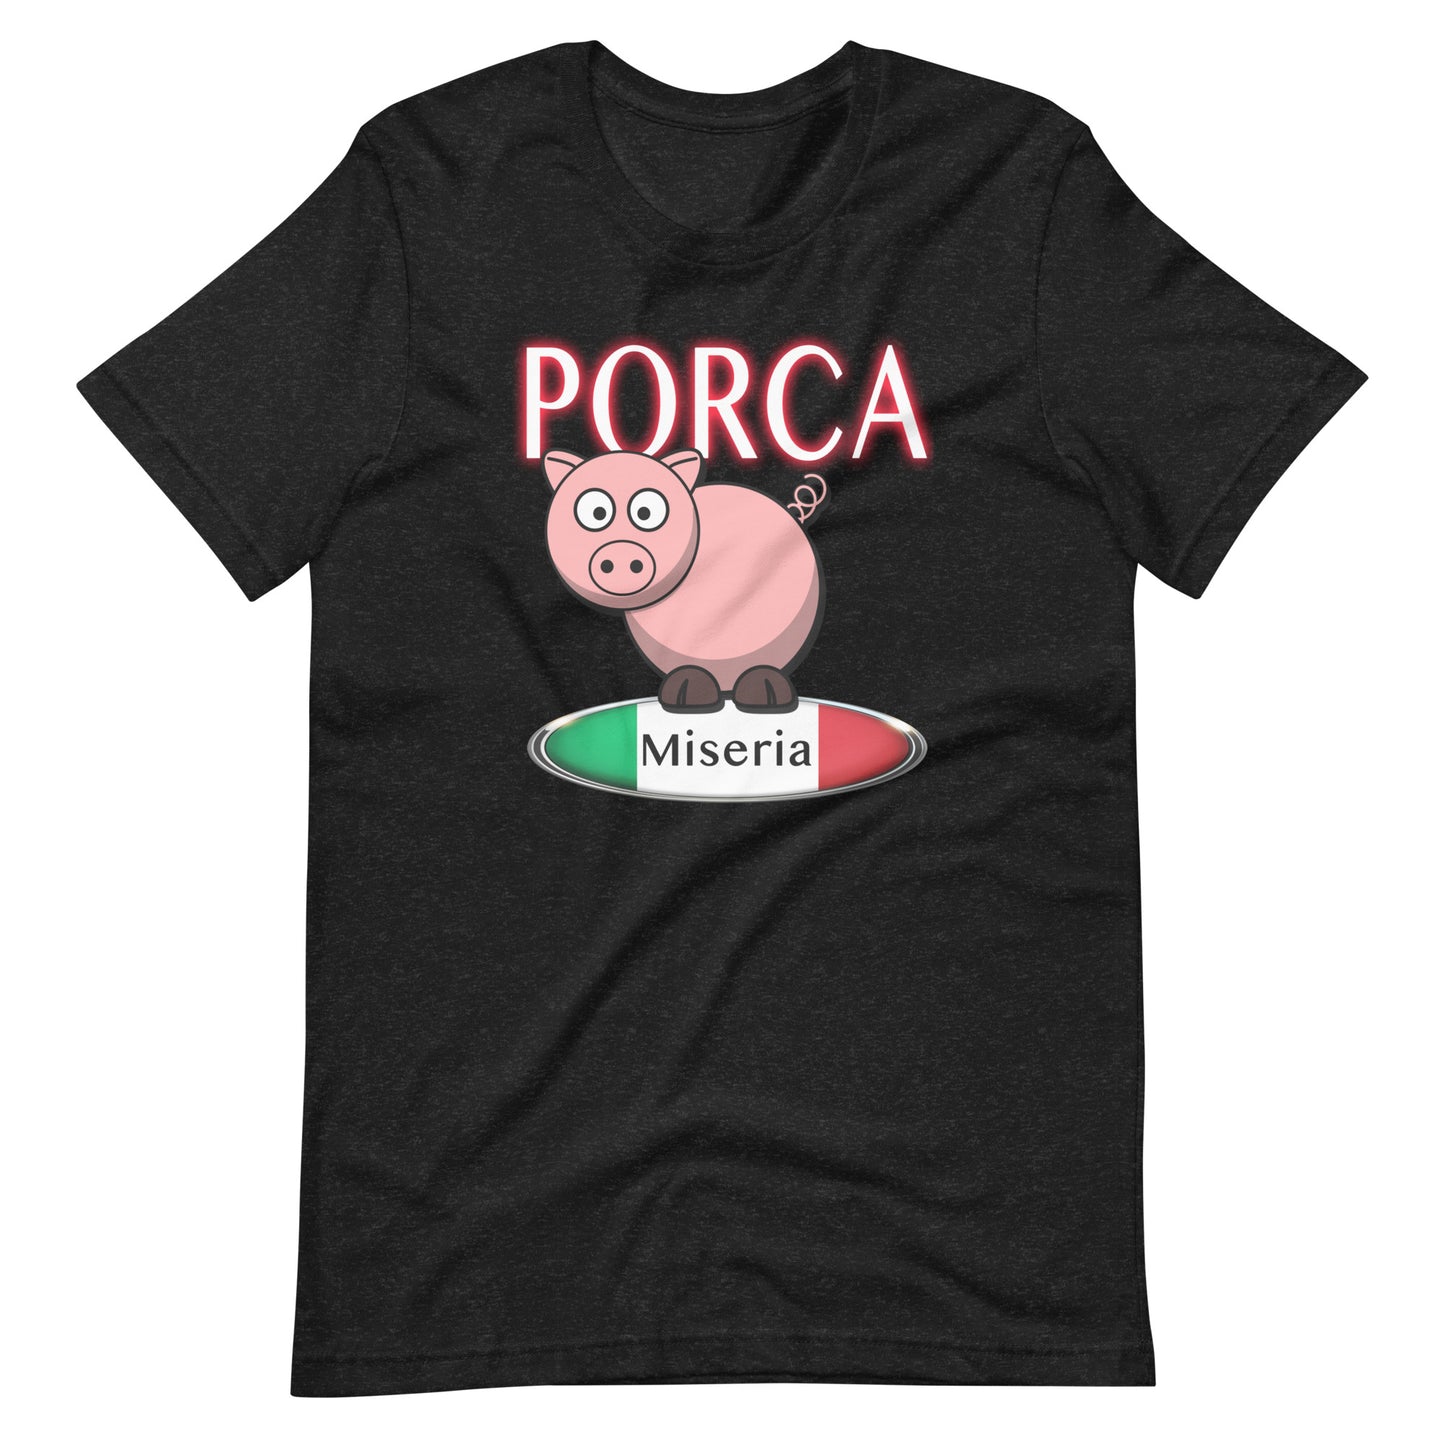 Porca Miseria - Unisex t-shirt